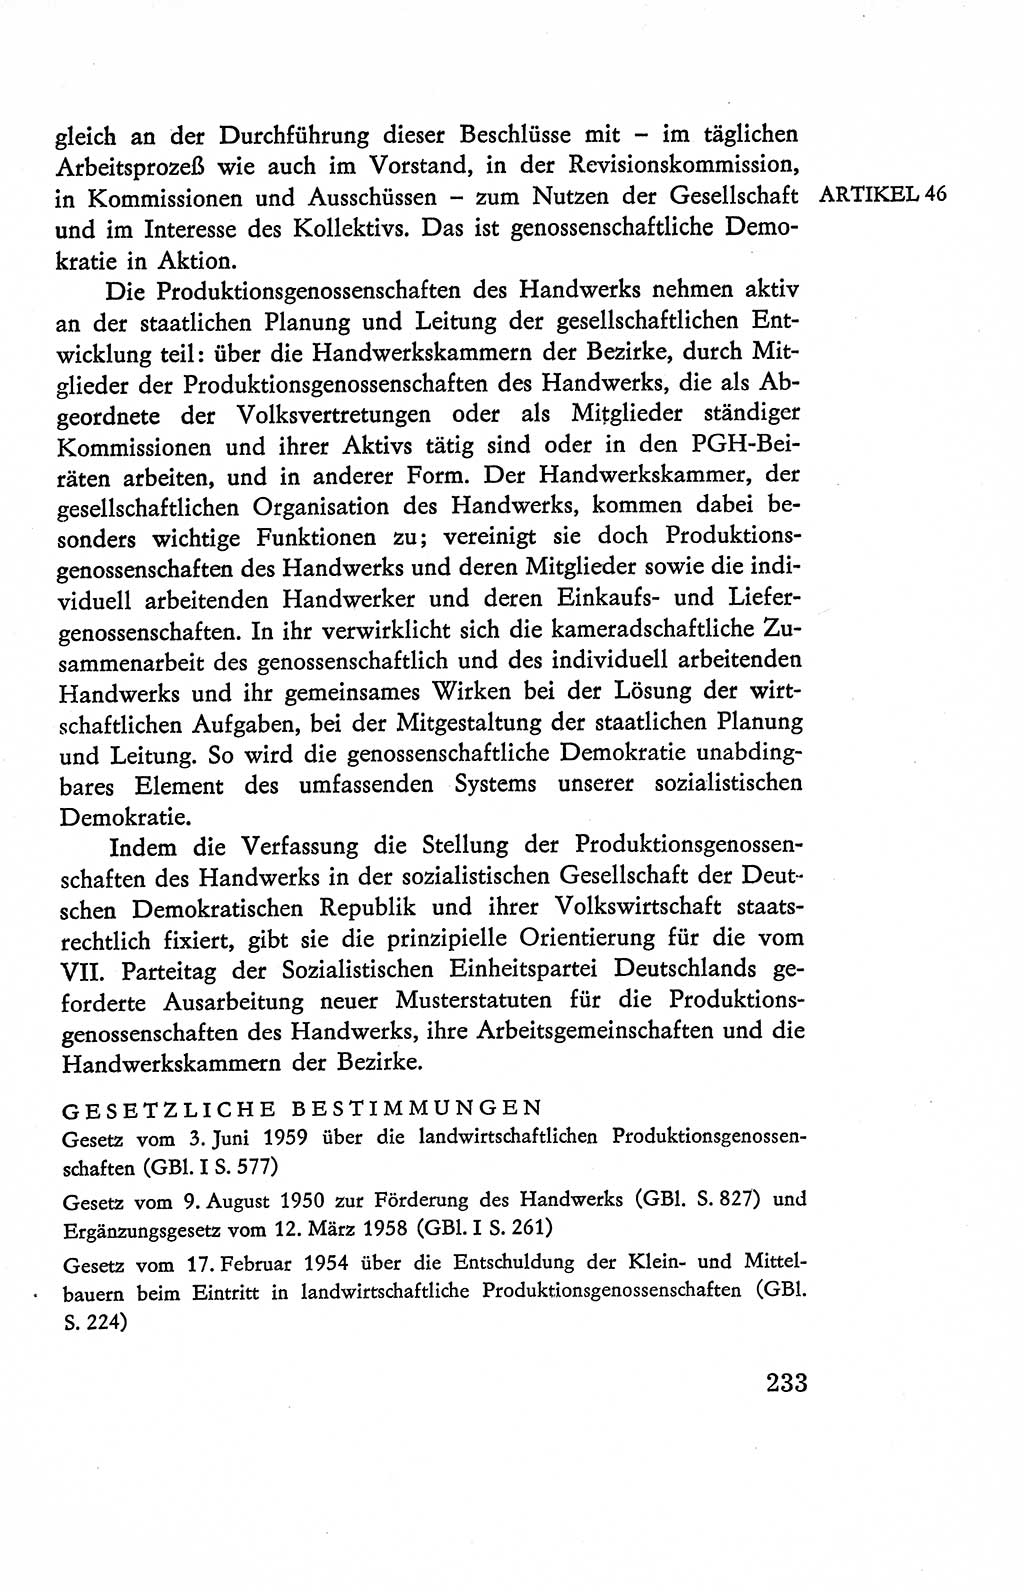 Verfassung der Deutschen Demokratischen Republik (DDR), Dokumente, Kommentar 1969, Band 2, Seite 233 (Verf. DDR Dok. Komm. 1969, Bd. 2, S. 233)